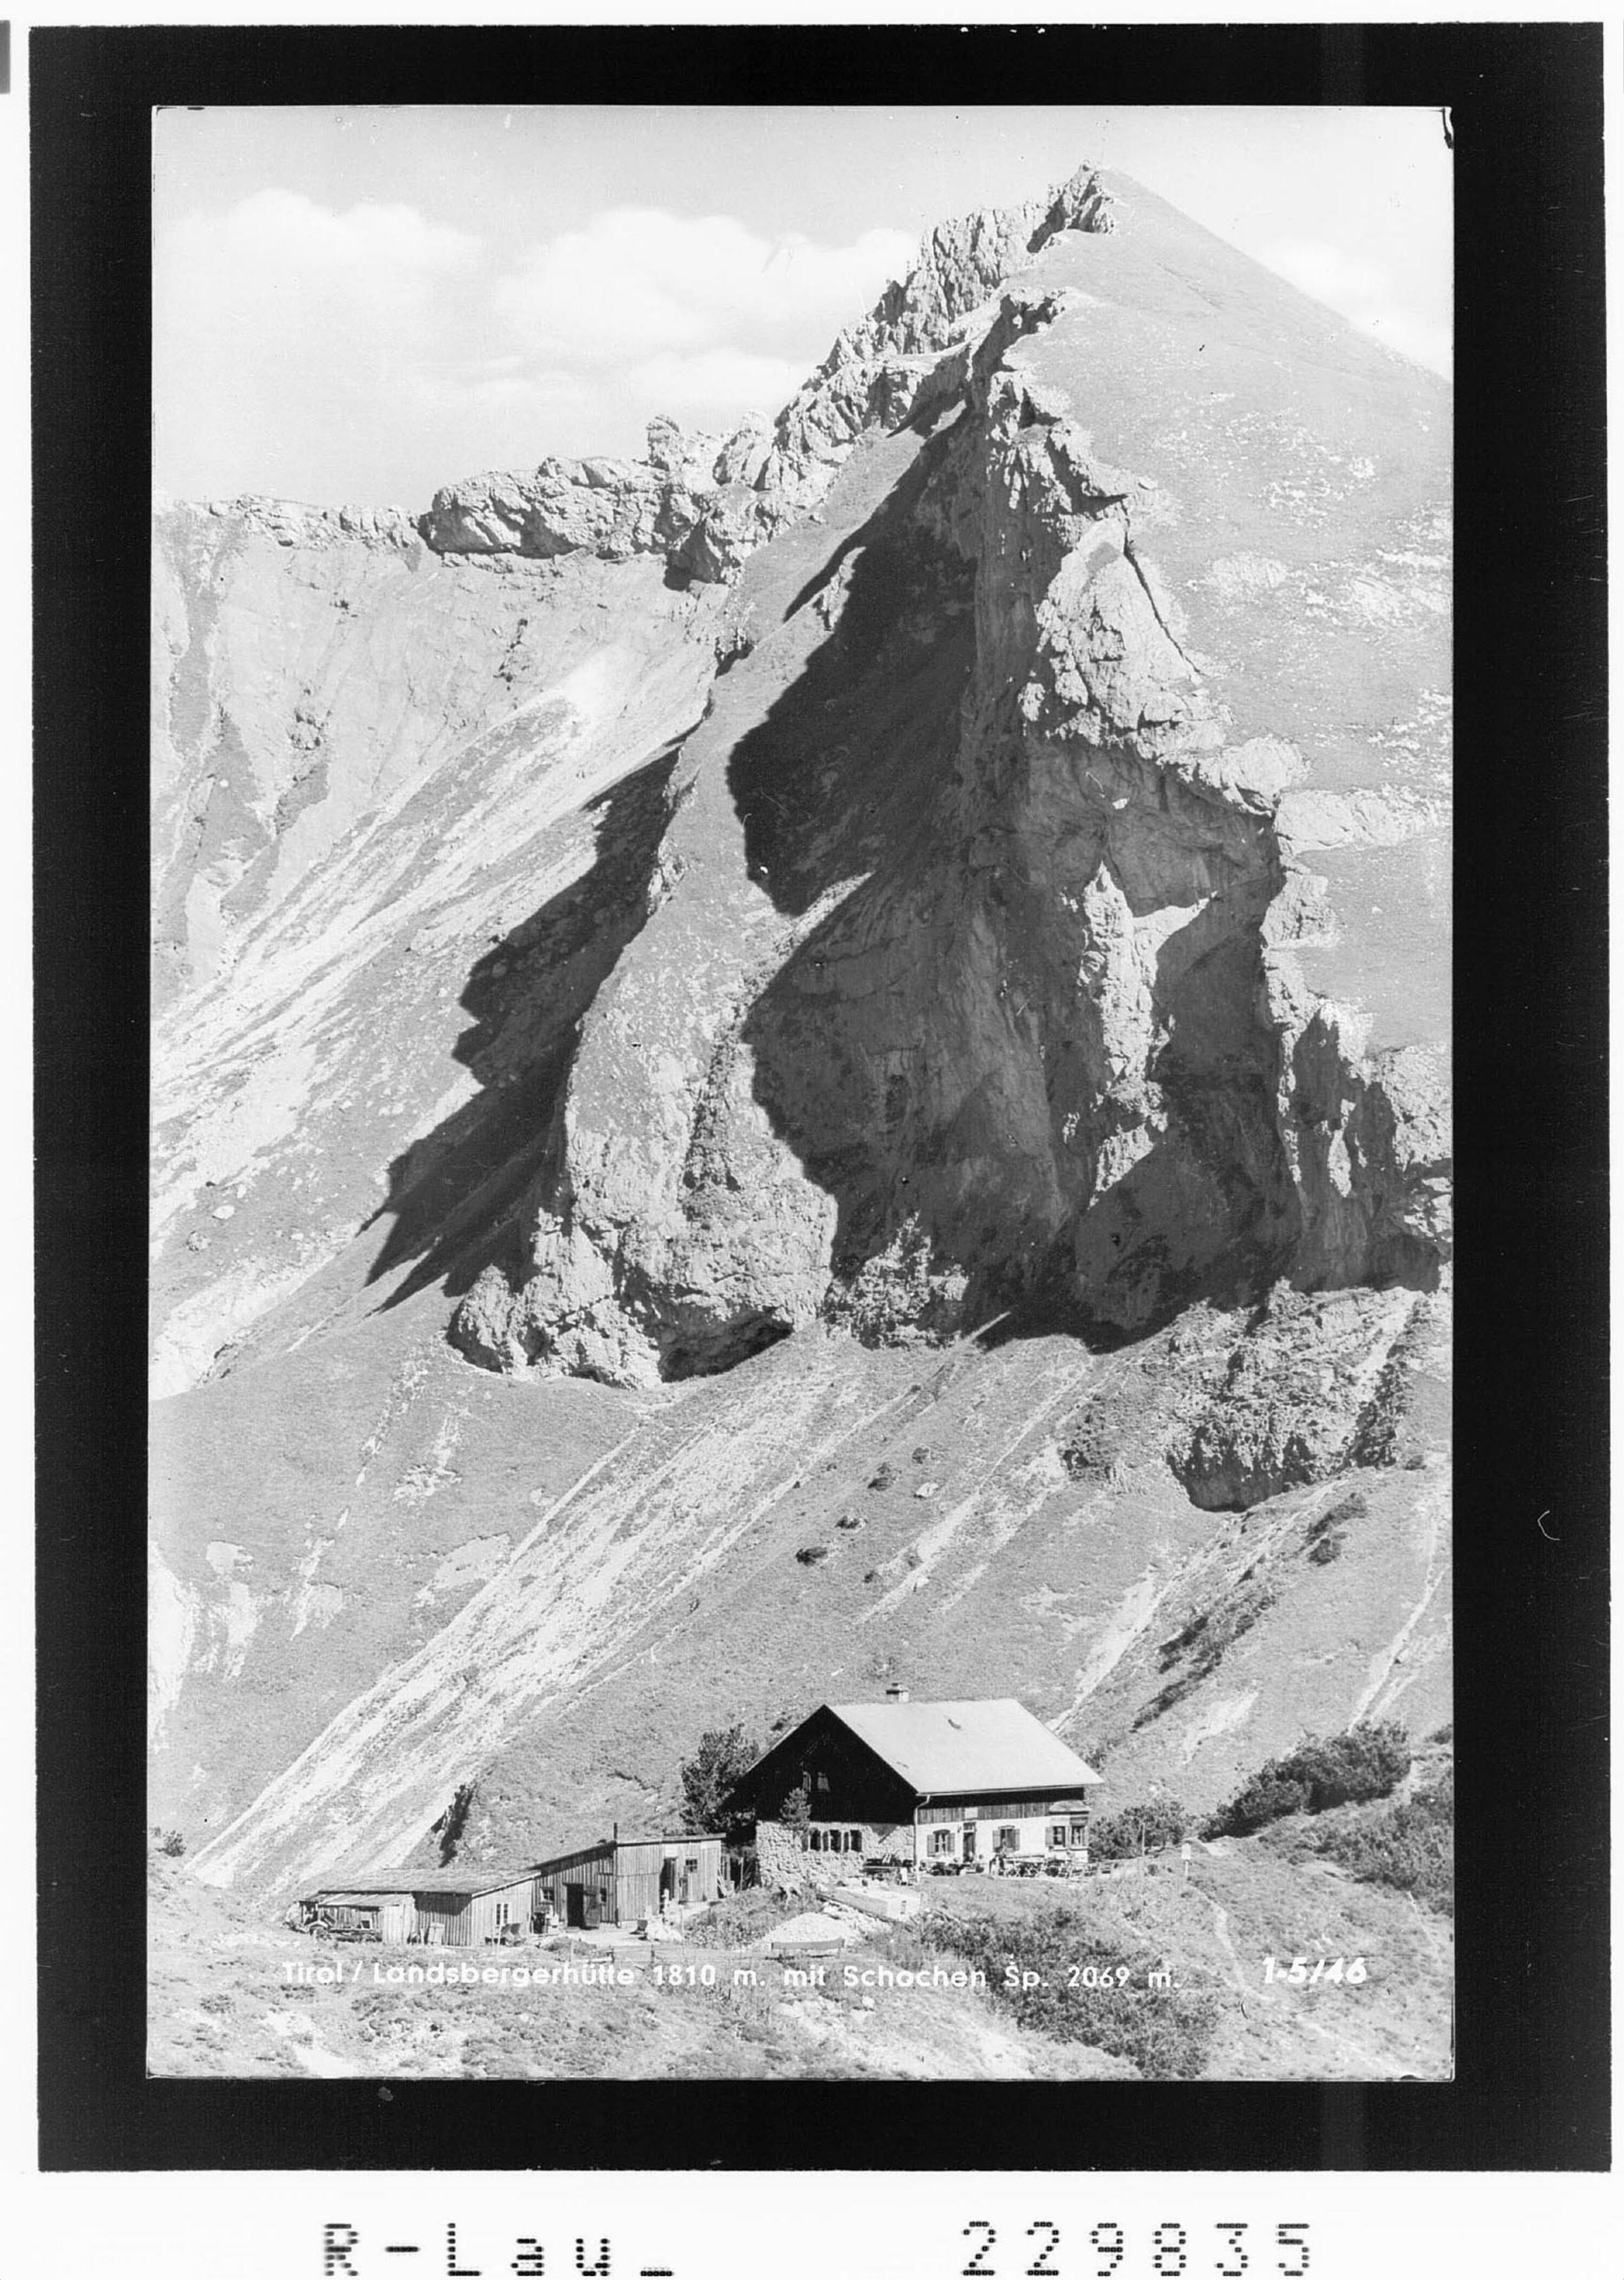 Tirol / Landsbergerhütte 1810 m mit Schochenspitze 2069 m></div>


    <hr>
    <div class=